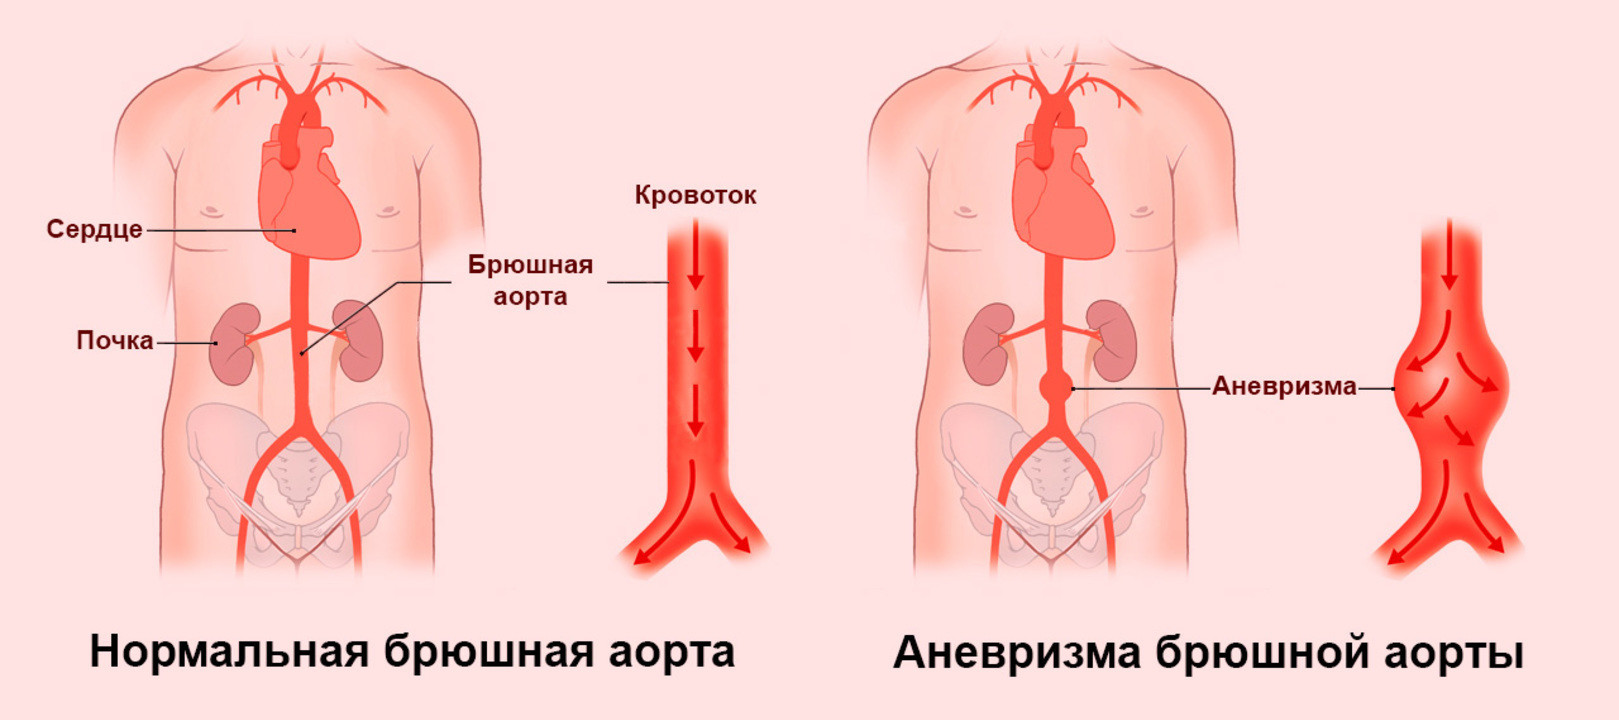 Аневризма аорты: определение, причины, осложнения и лечение